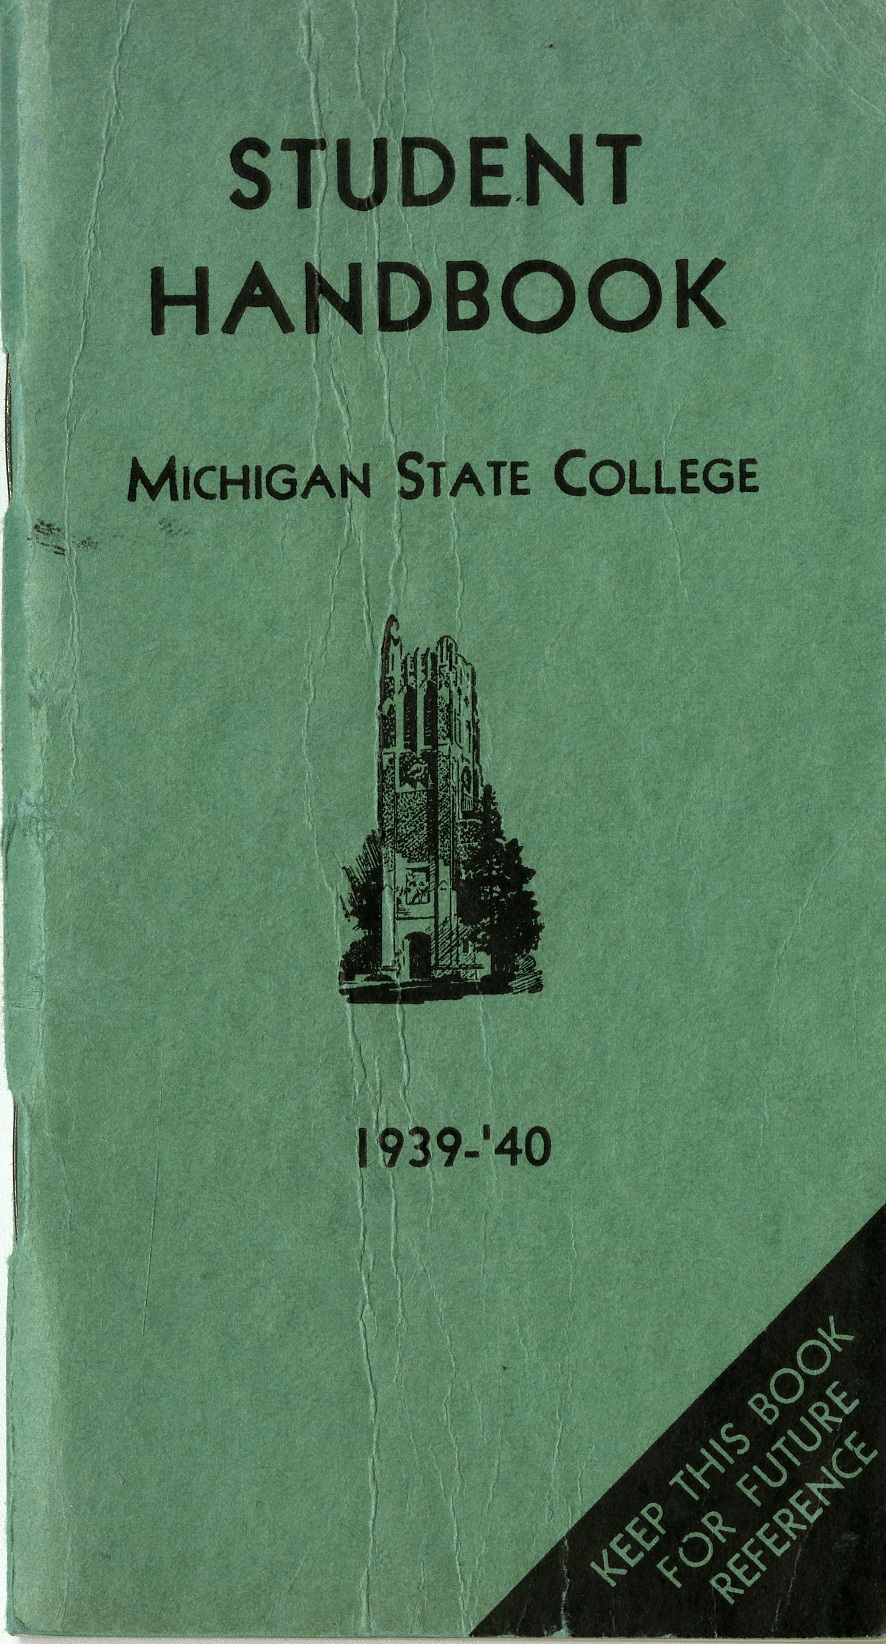 Student Handbook, 1939-1940